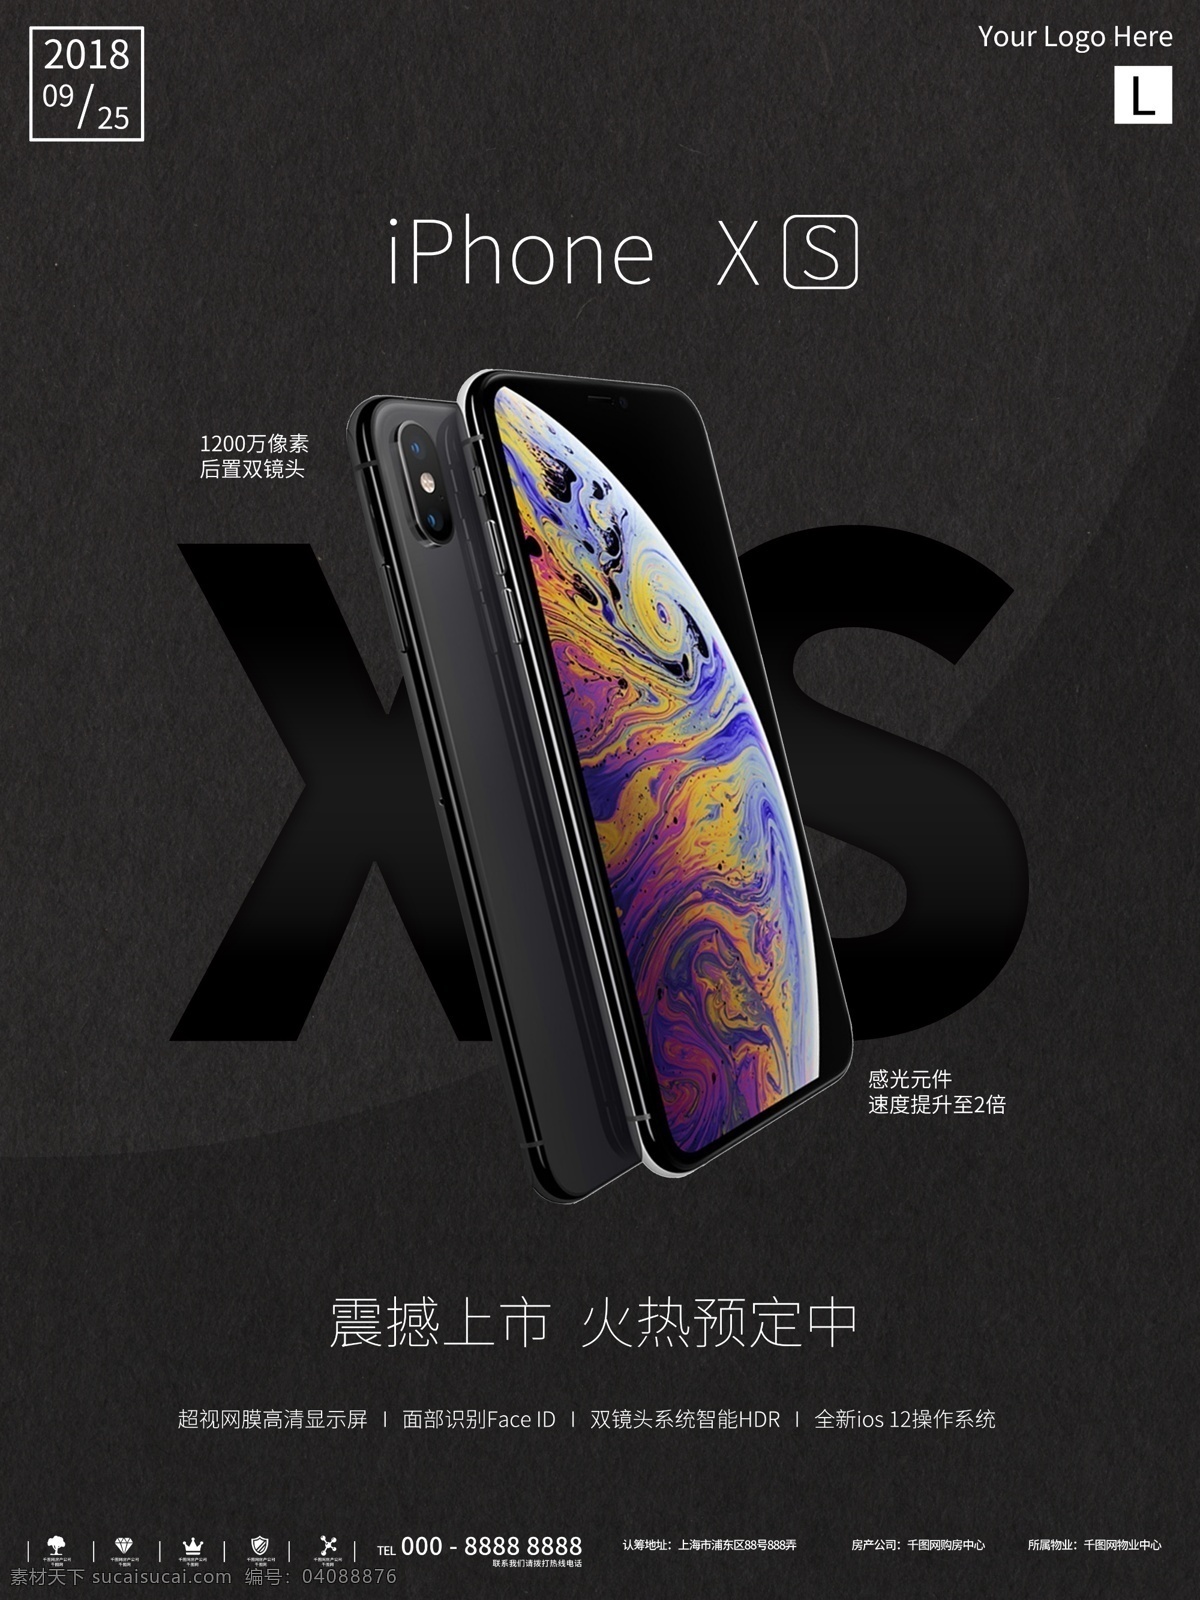 简约 质感 iphonexs 新品 预售 海报 大气 苹果 黑色 纹理 iphone xs 新款